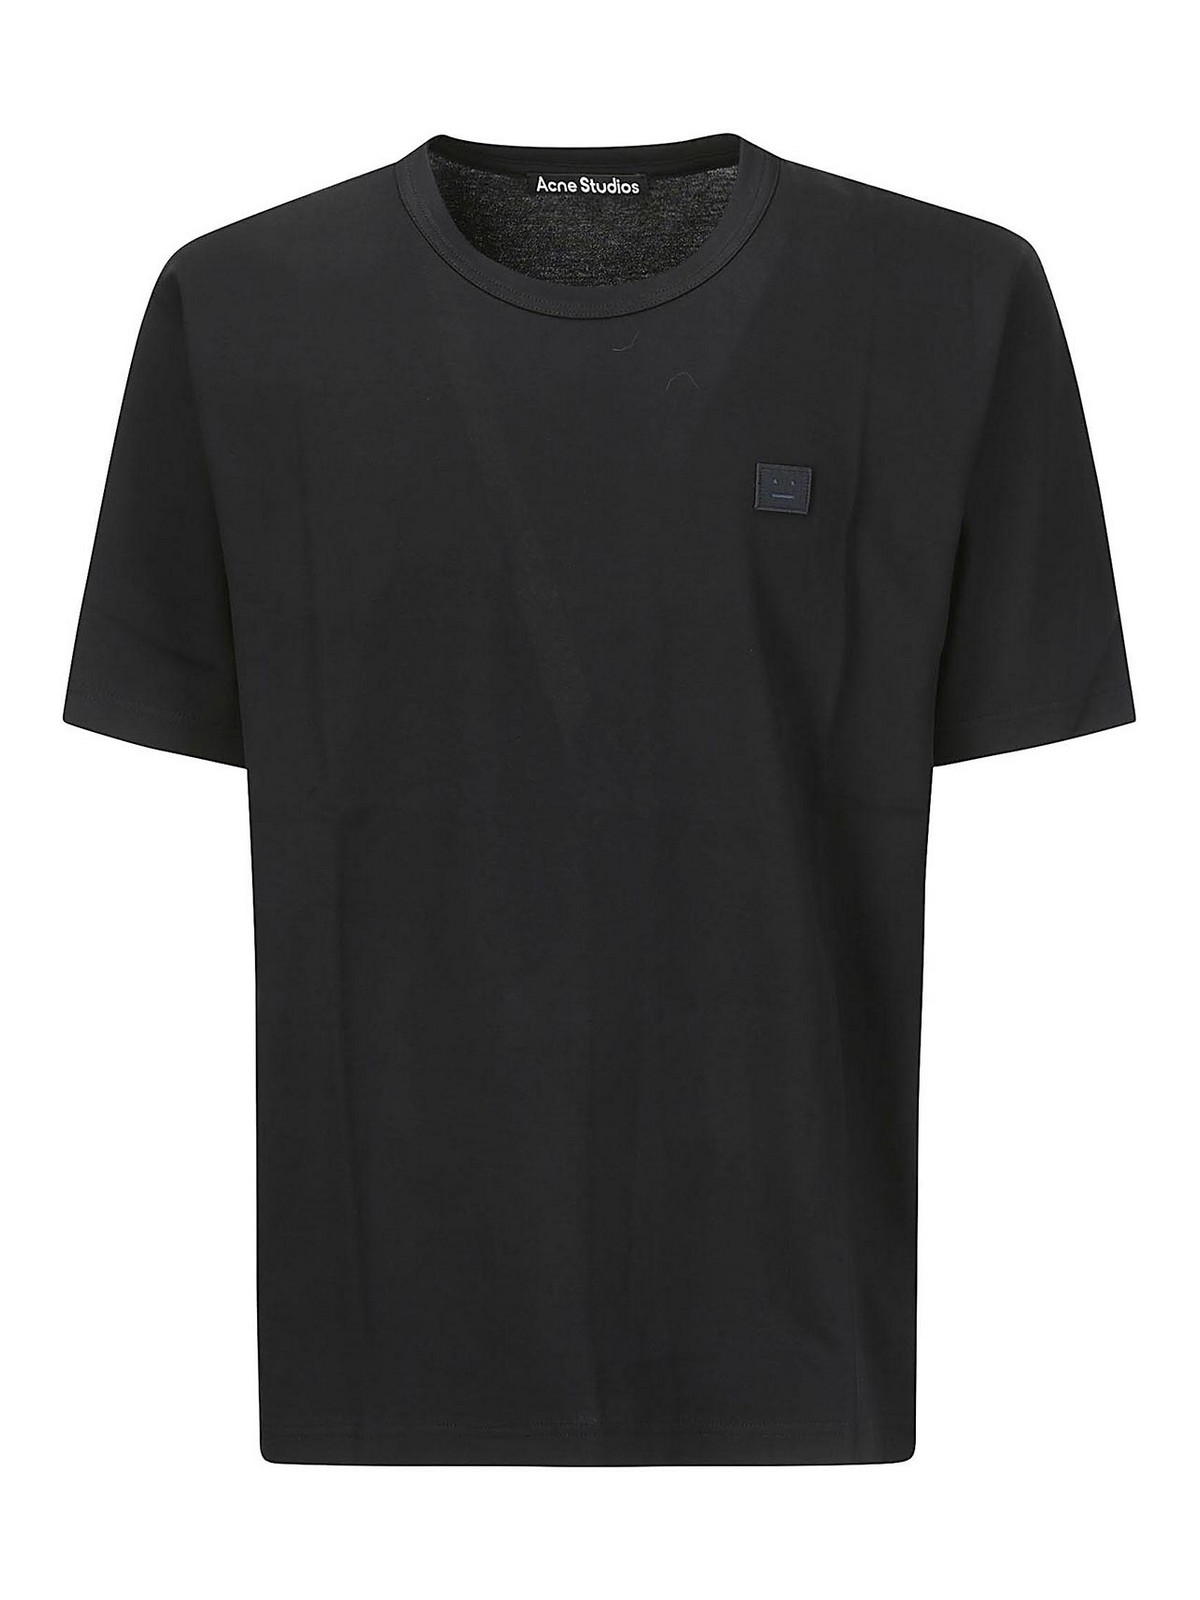 Acne Studios Crewneck Black T-shirt